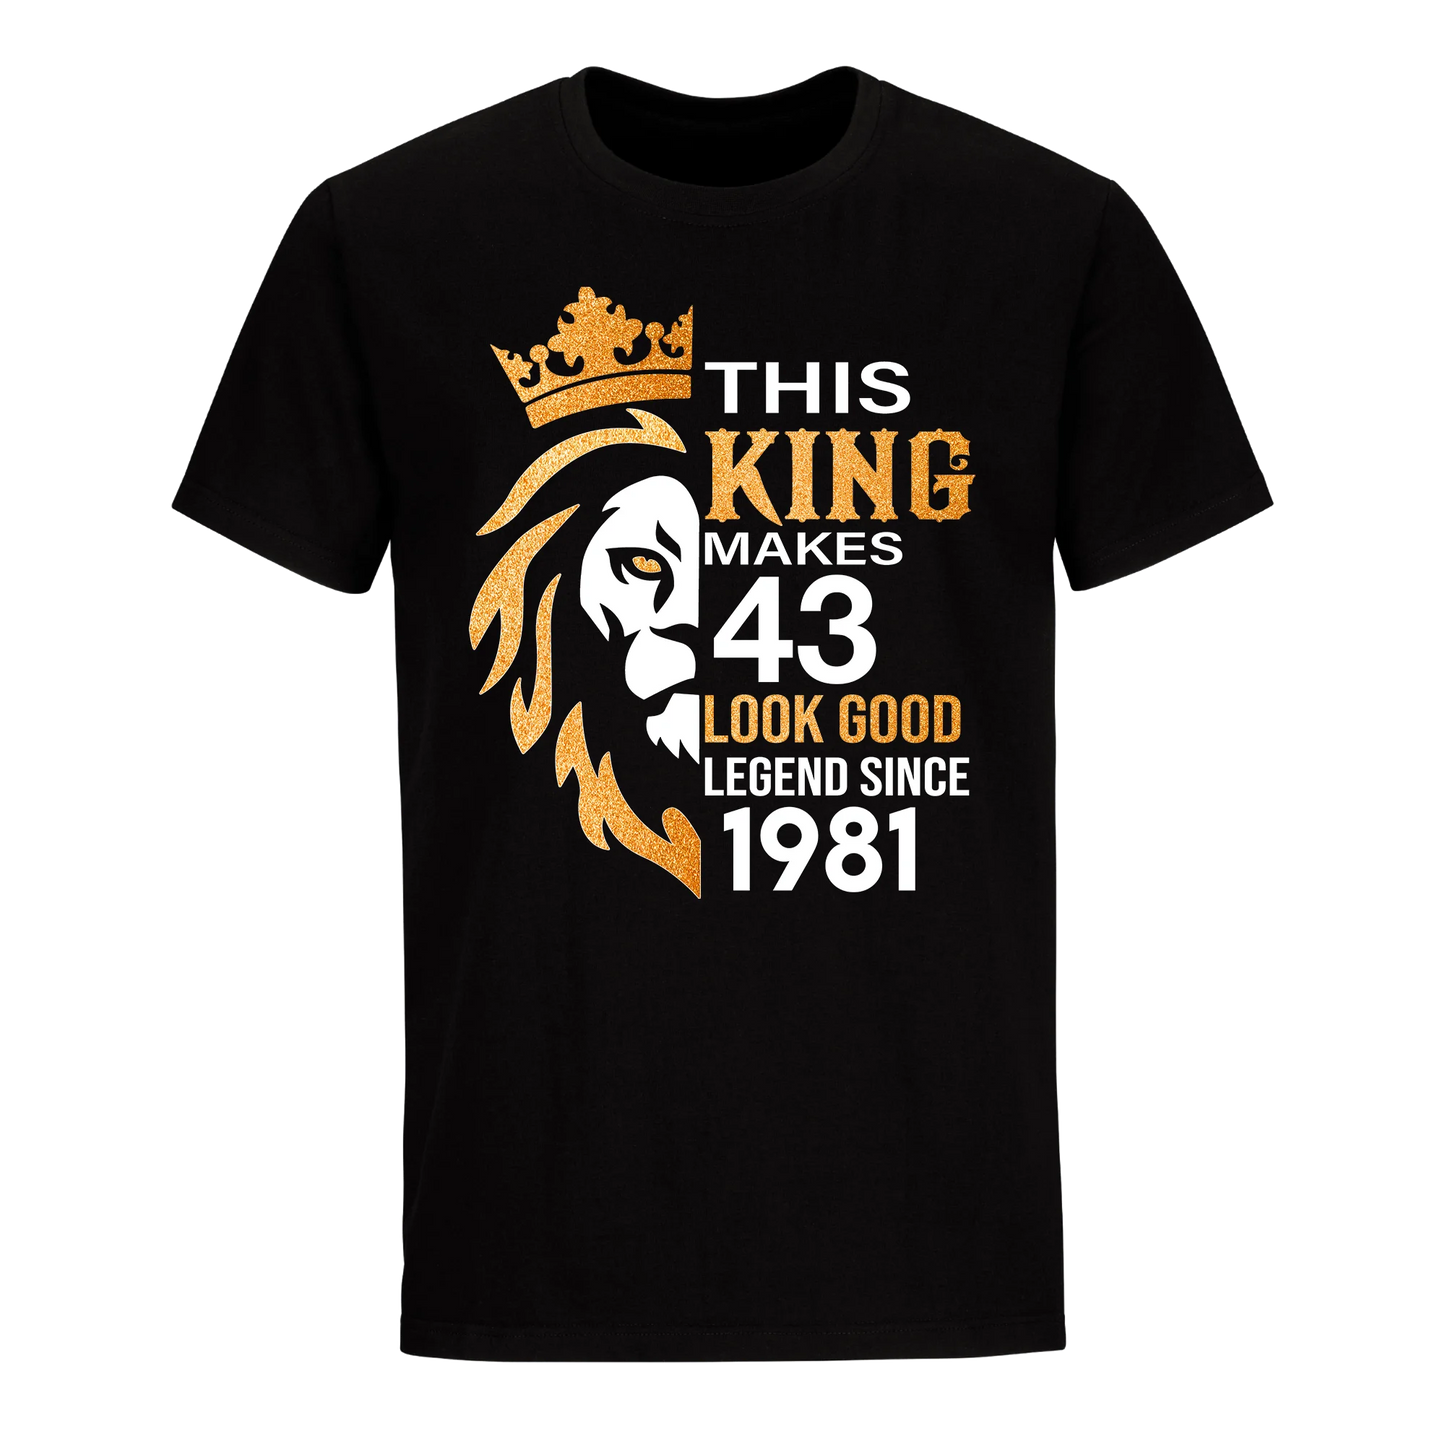 KING 43RD 1981 LEGEND UNISEX SHIRT